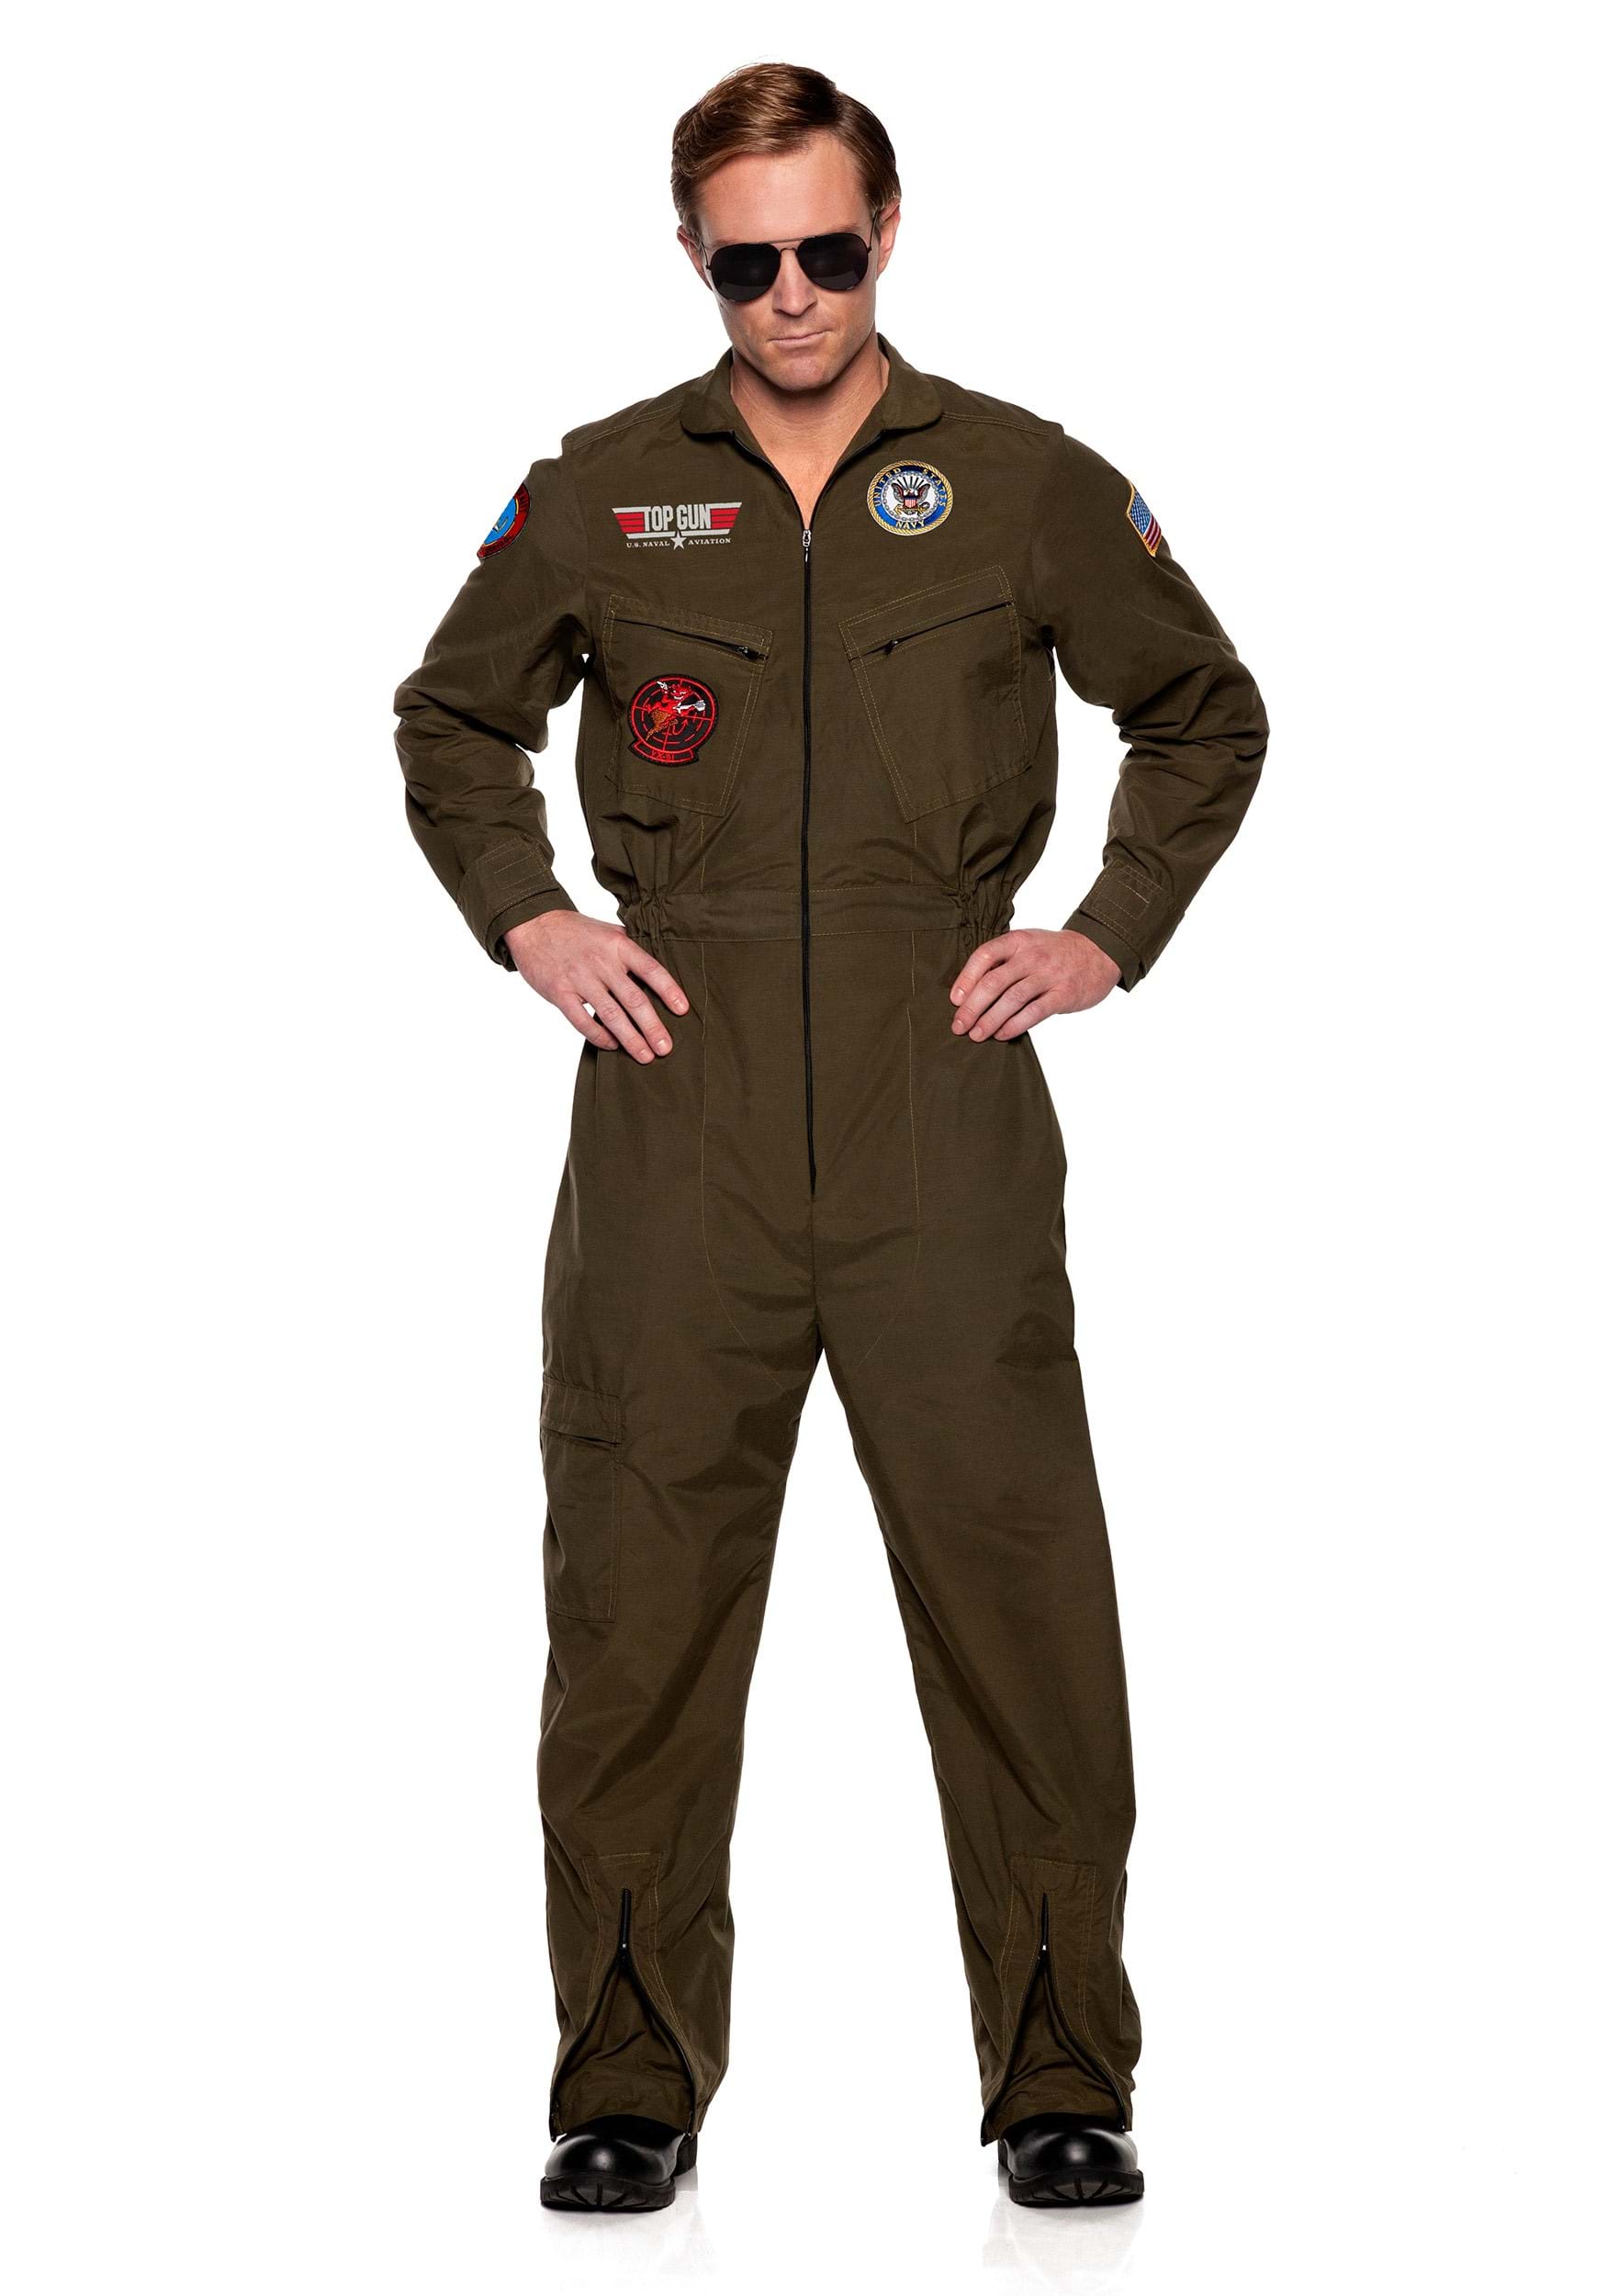 US Navy Top Gun Men’s Jumpsuit Costume